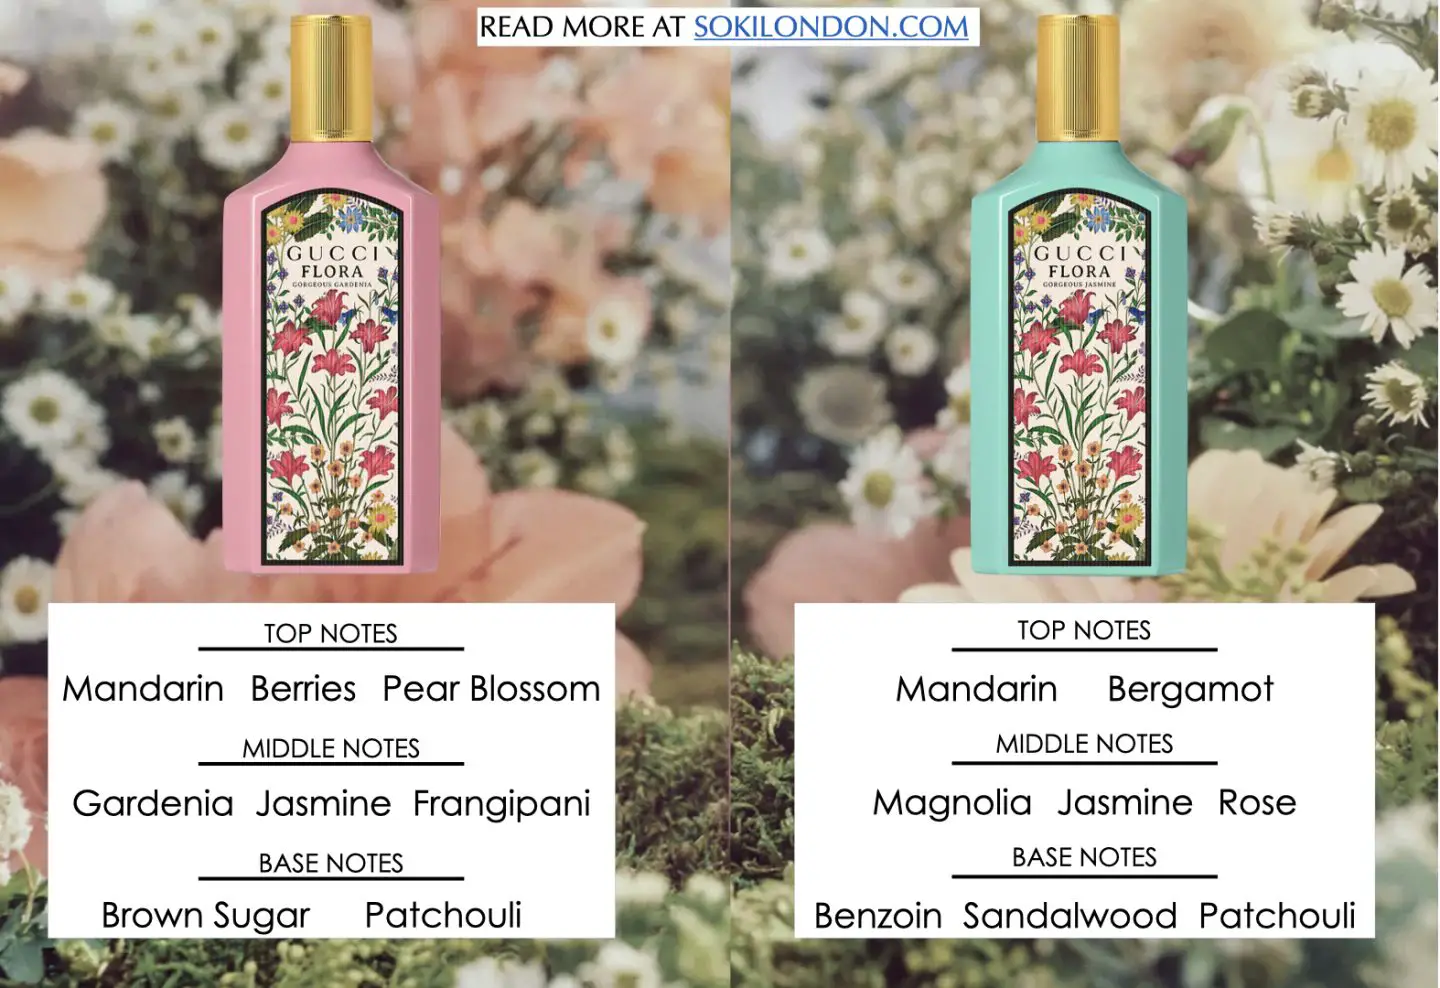 Gucci Flora Gardenia tuyệt đẹp vs Hoa nhài tuyệt đẹp